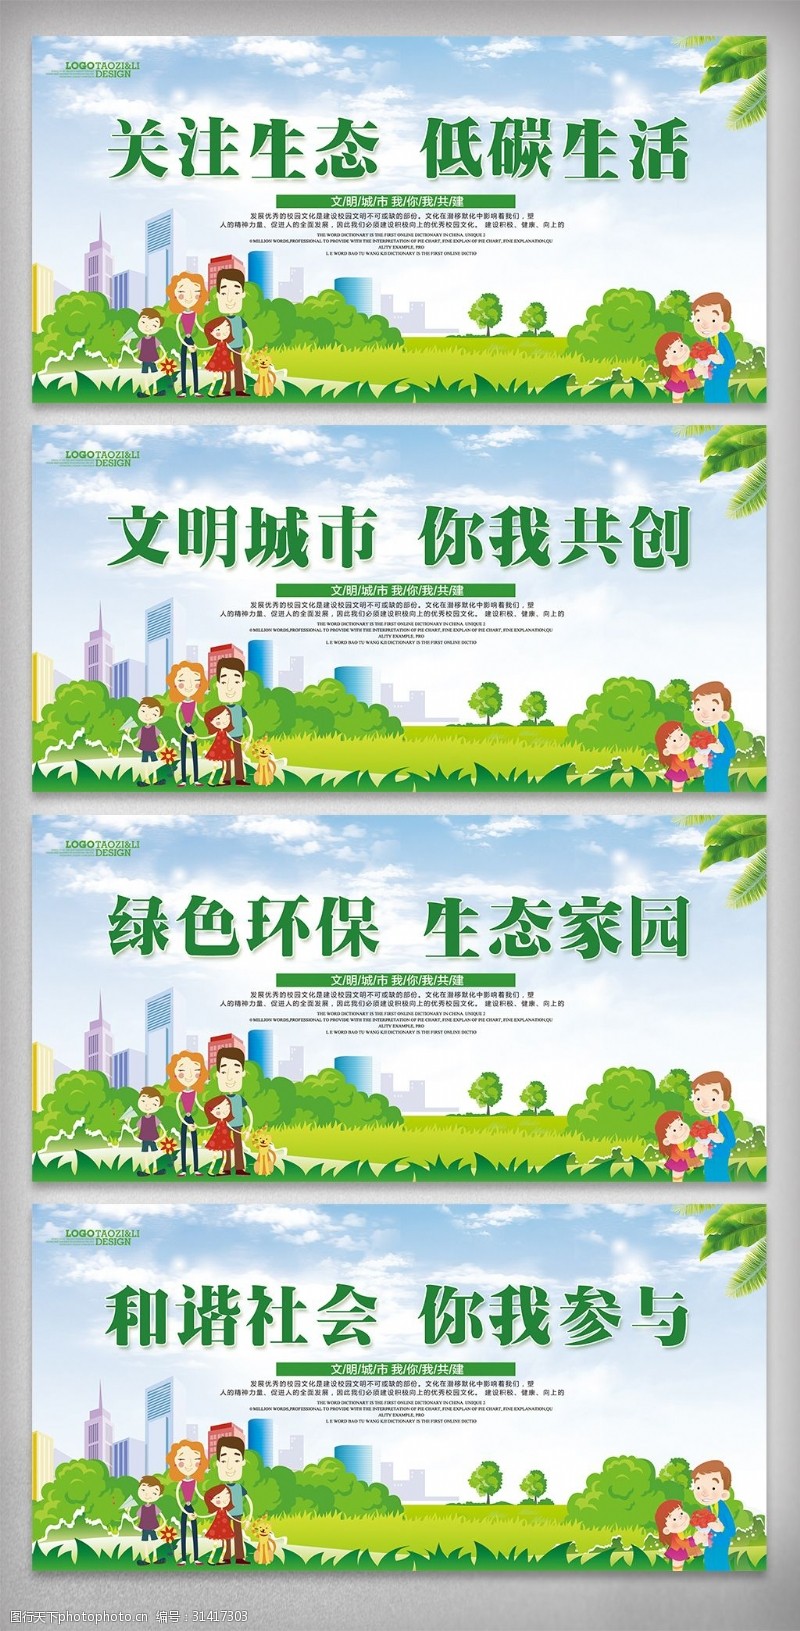 保建共建绿色环保低碳文化城市宣传挂画设计模板